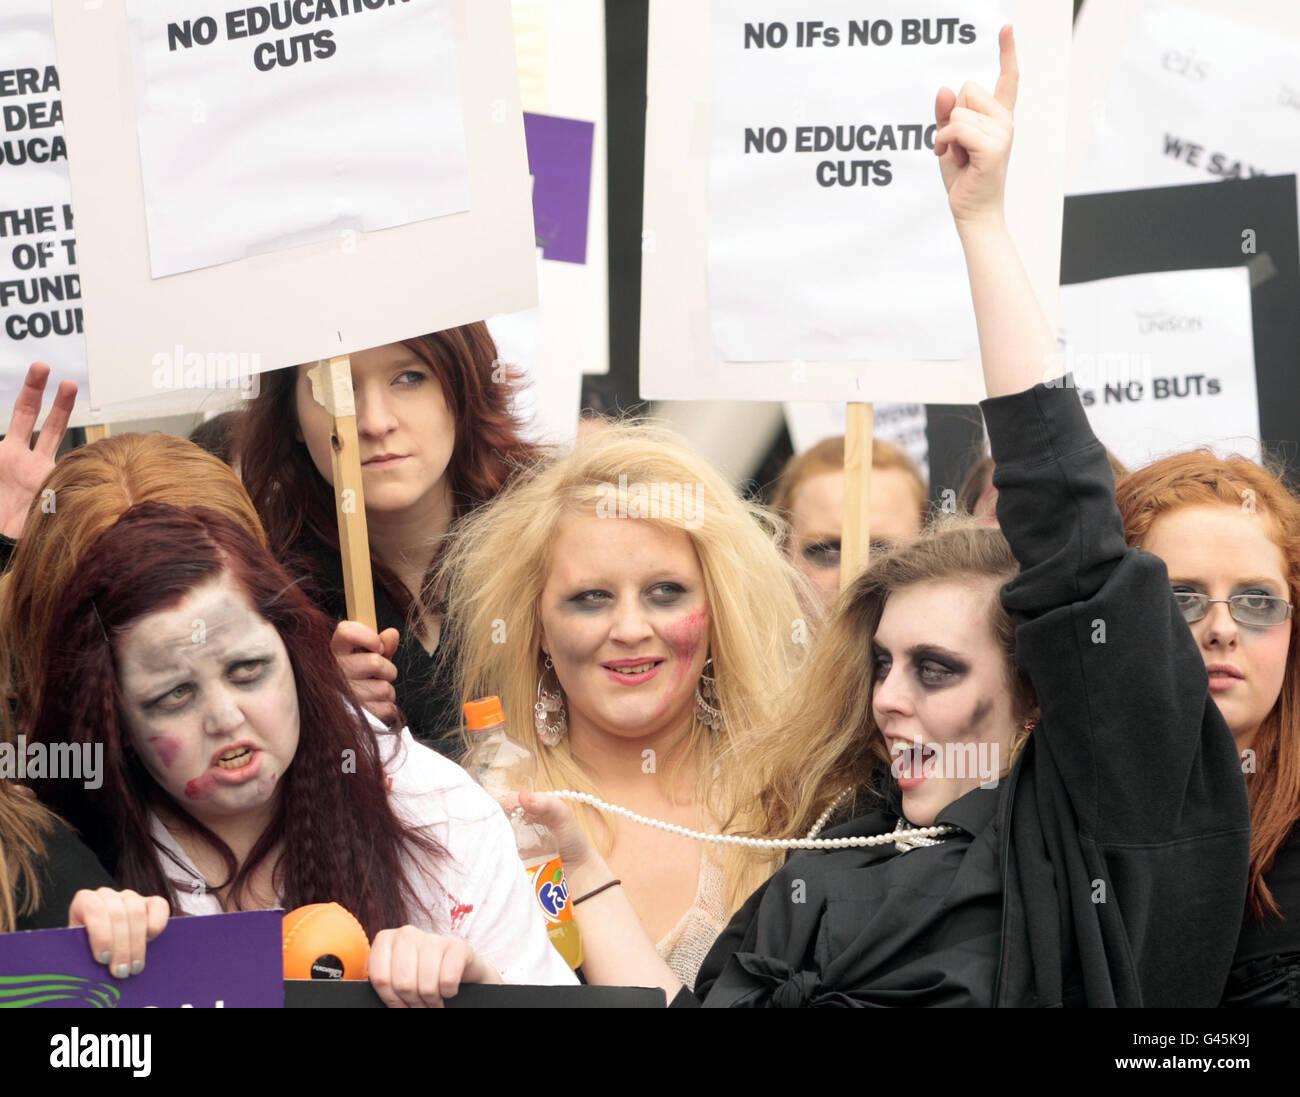 Studenten, die als Zombies vom Glasgow College gekleidet sind, kommen im schottischen parlament in Edinburgh an, mit einer Petition gegen Pläne, Kurse zu übertragen. Stockfoto